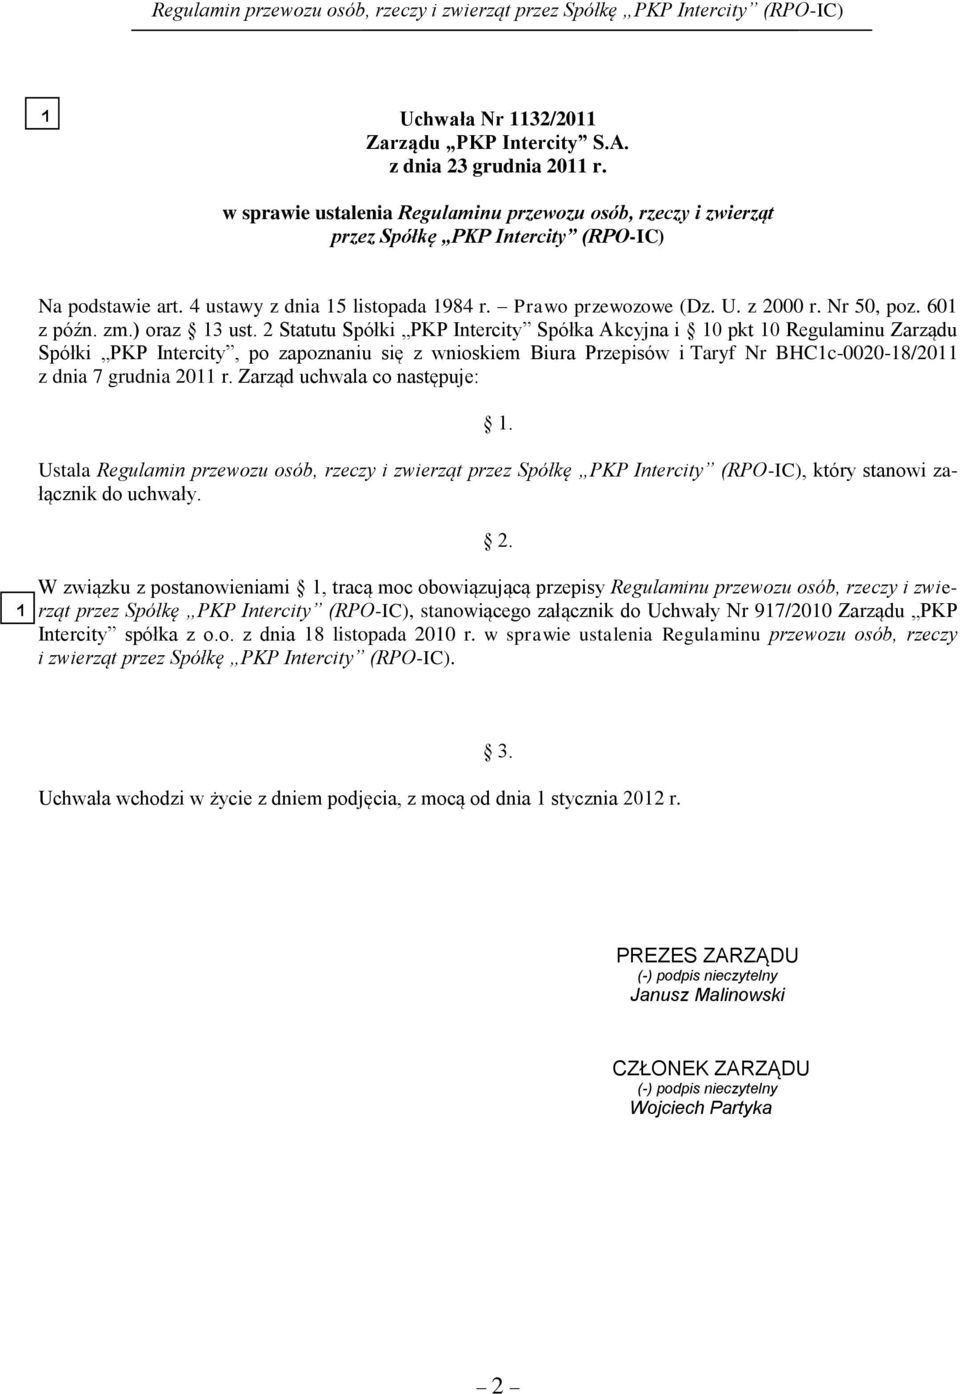 2 Statutu Spółki PKP Intercity Spółka Akcyjna i 10 pkt 10 Regulaminu Zarządu Spółki PKP Intercity, po zapoznaniu się z wnioskiem Biura Przepisów i Taryf Nr BHC1c-0020-18/2011 z dnia 7 grudnia 2011 r.